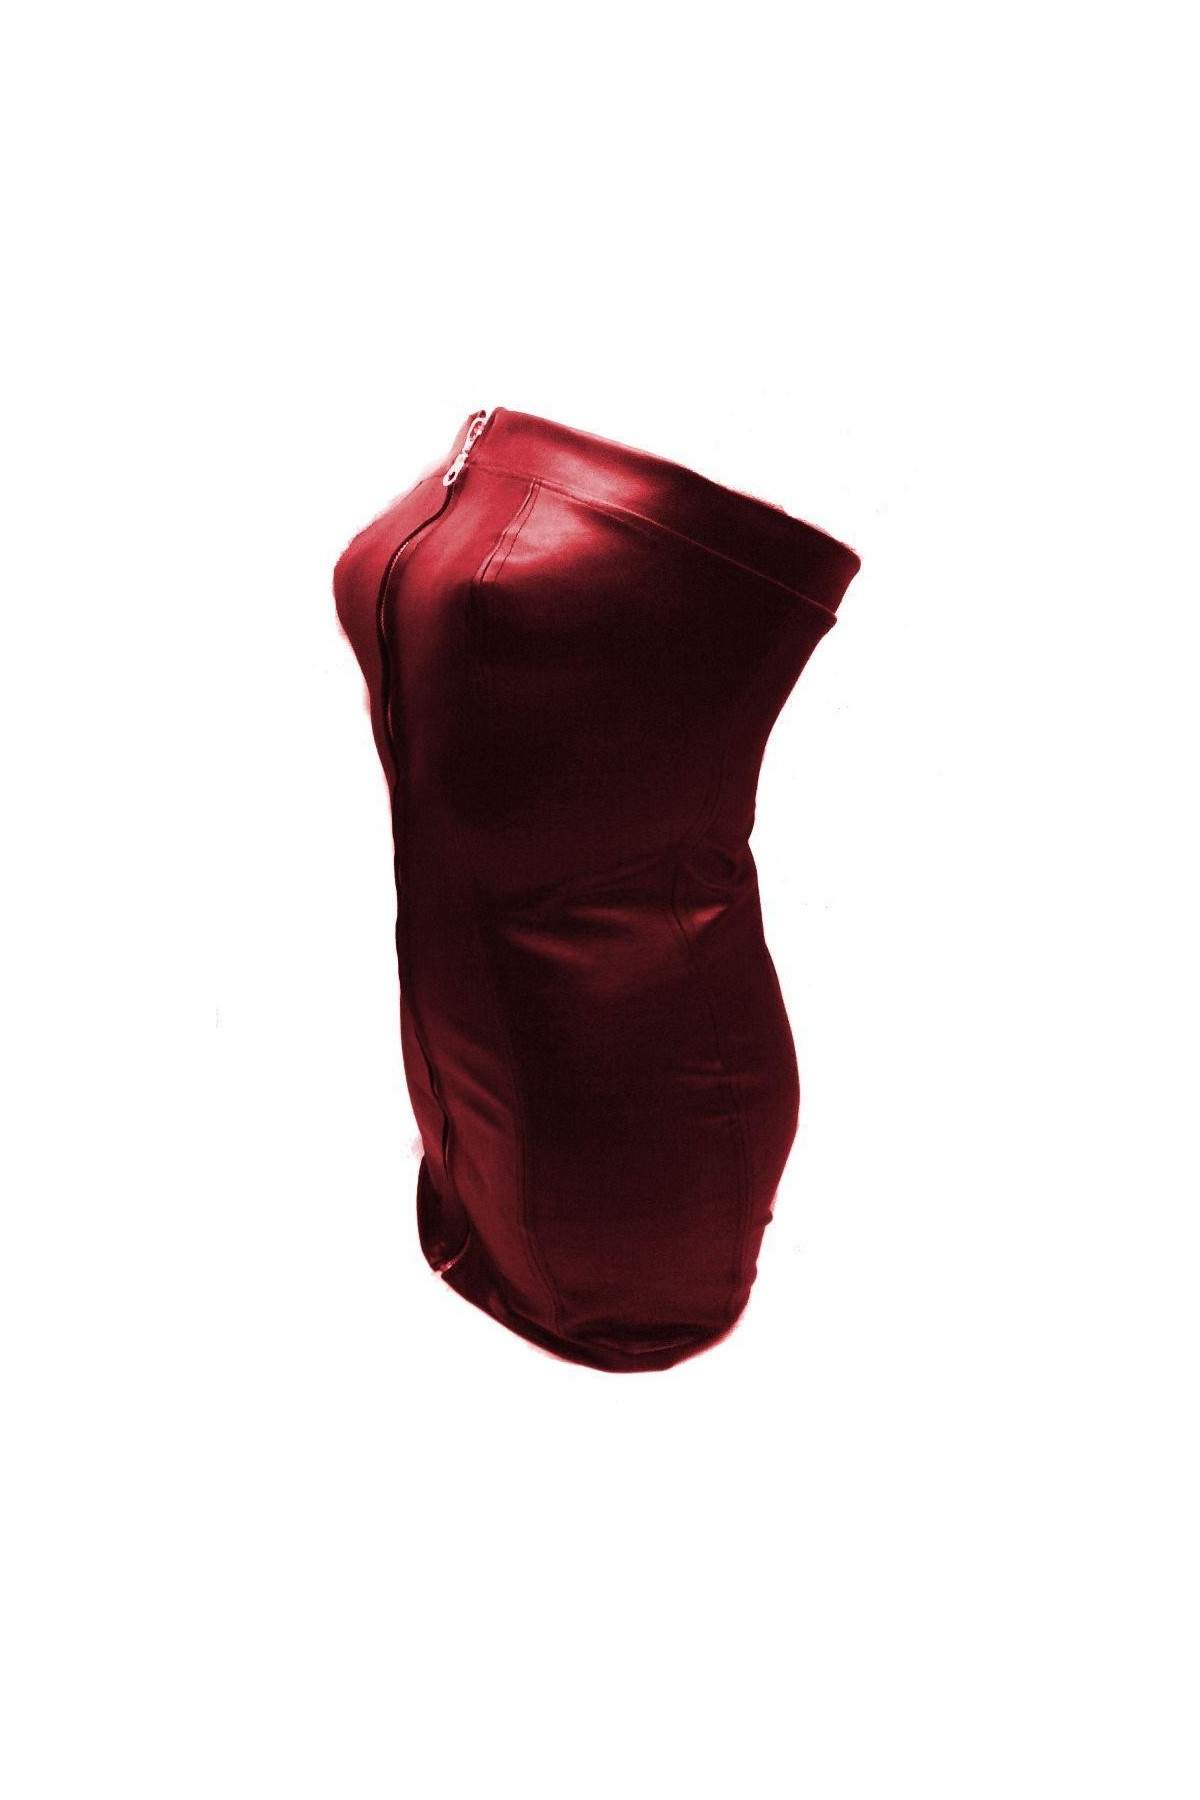 Spare 15 Prozent auf Softes Designer Leder Kleid rot Größe L - XXL ... - 